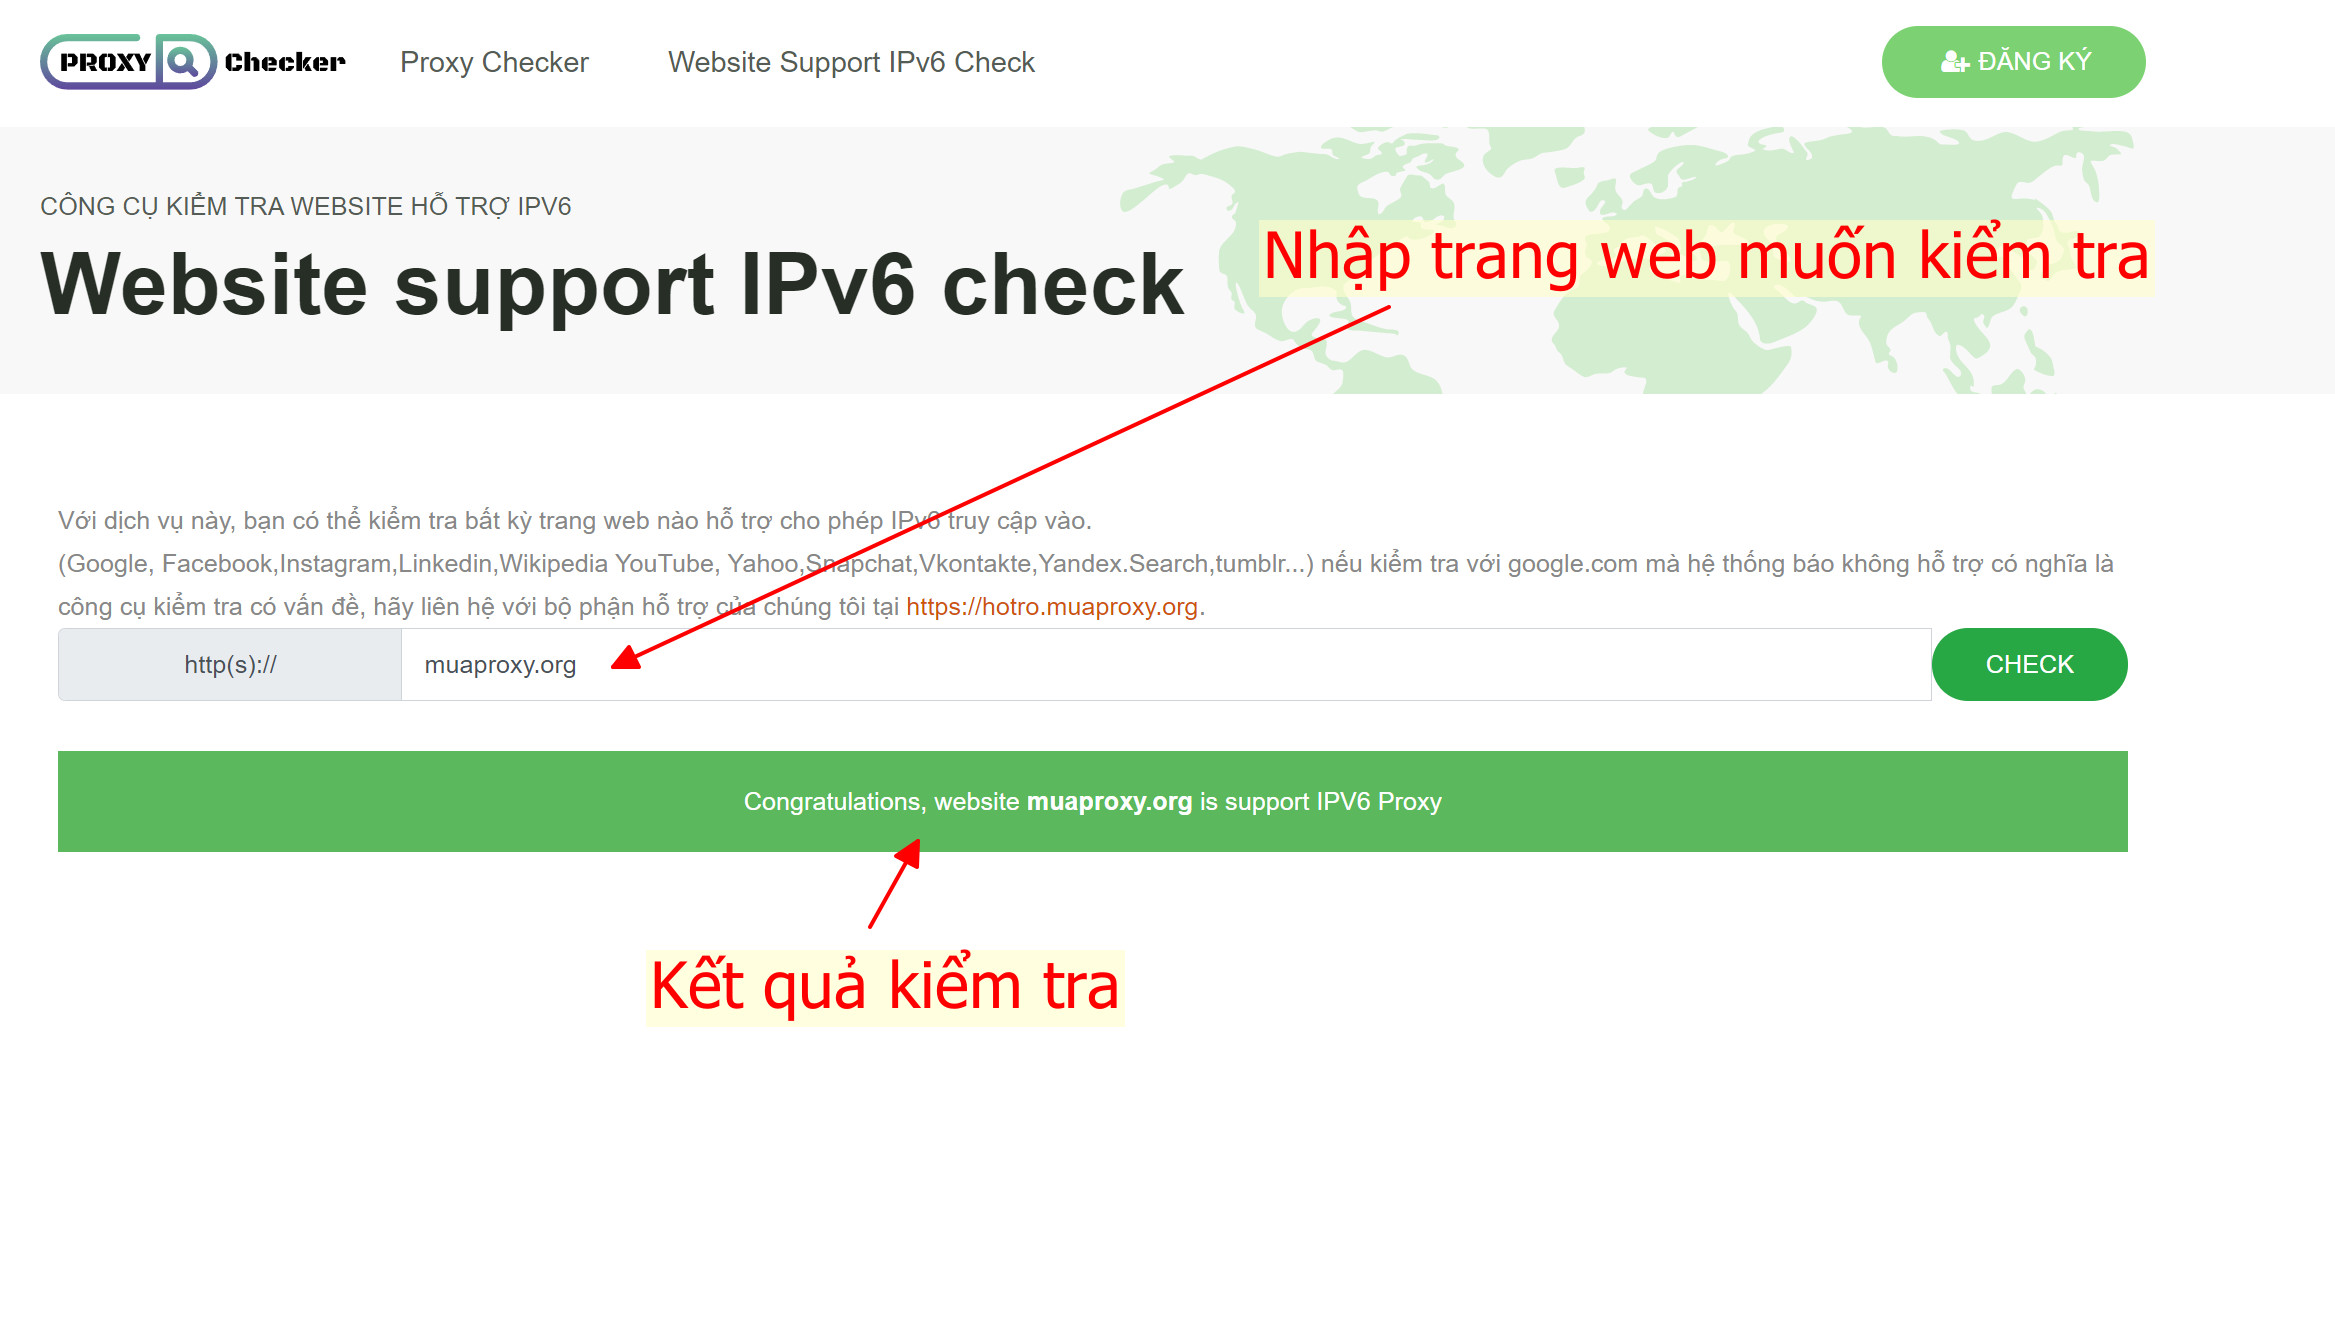 Ra mắt công cụ kiểm tra website hỗ trợ IPv6 - proxychecker.org